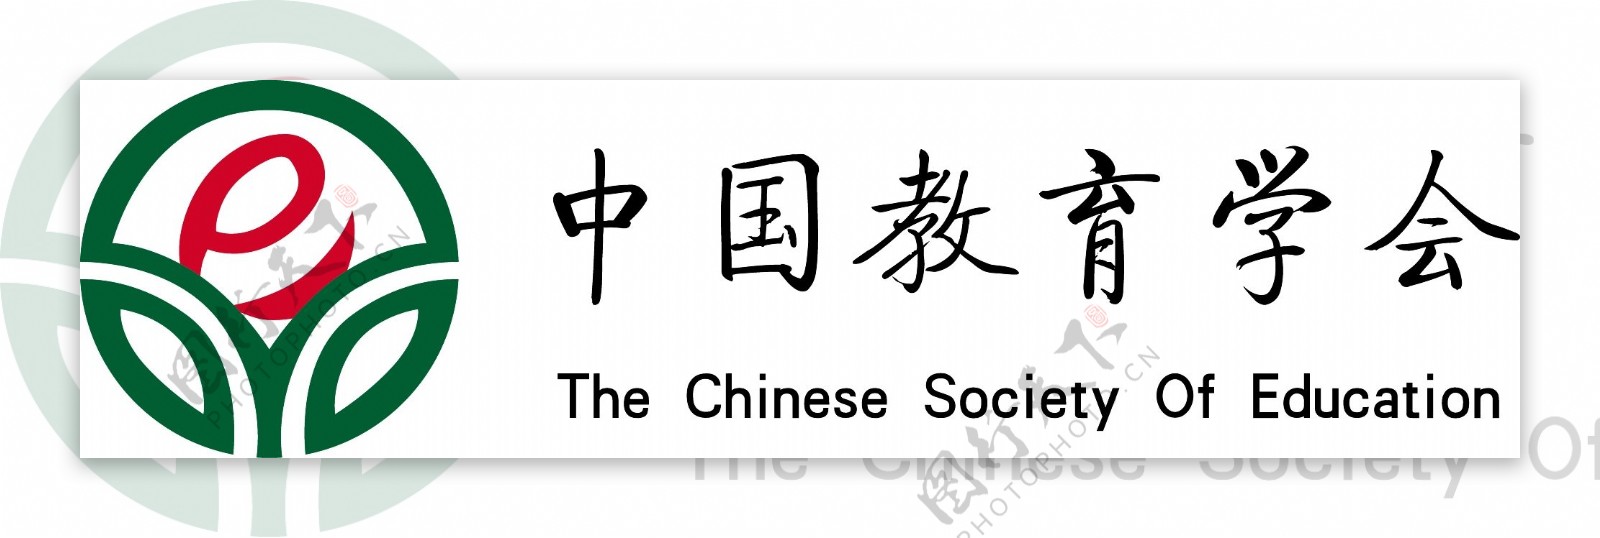 中国教育学会logo